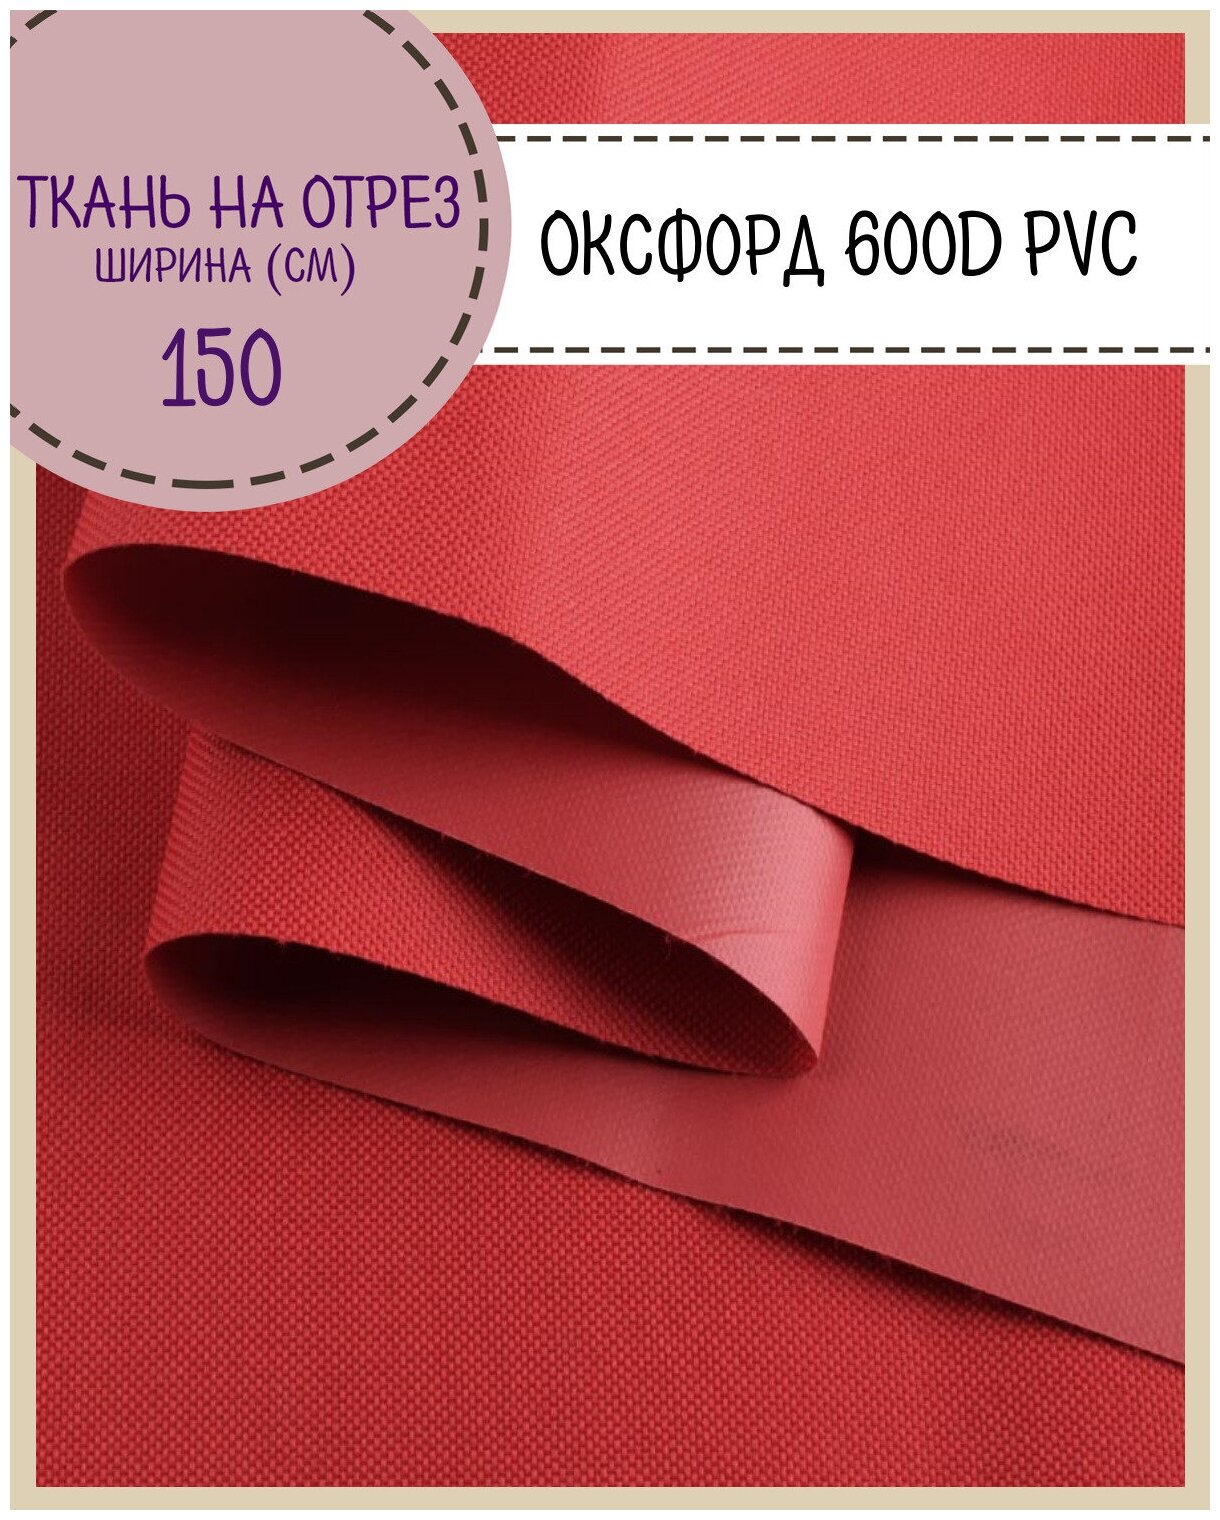 Ткань Оксфорд Oxford 600D PVC (ПВХ), водоотталкивающая, цв. красный, на отрез, цена за пог. метр